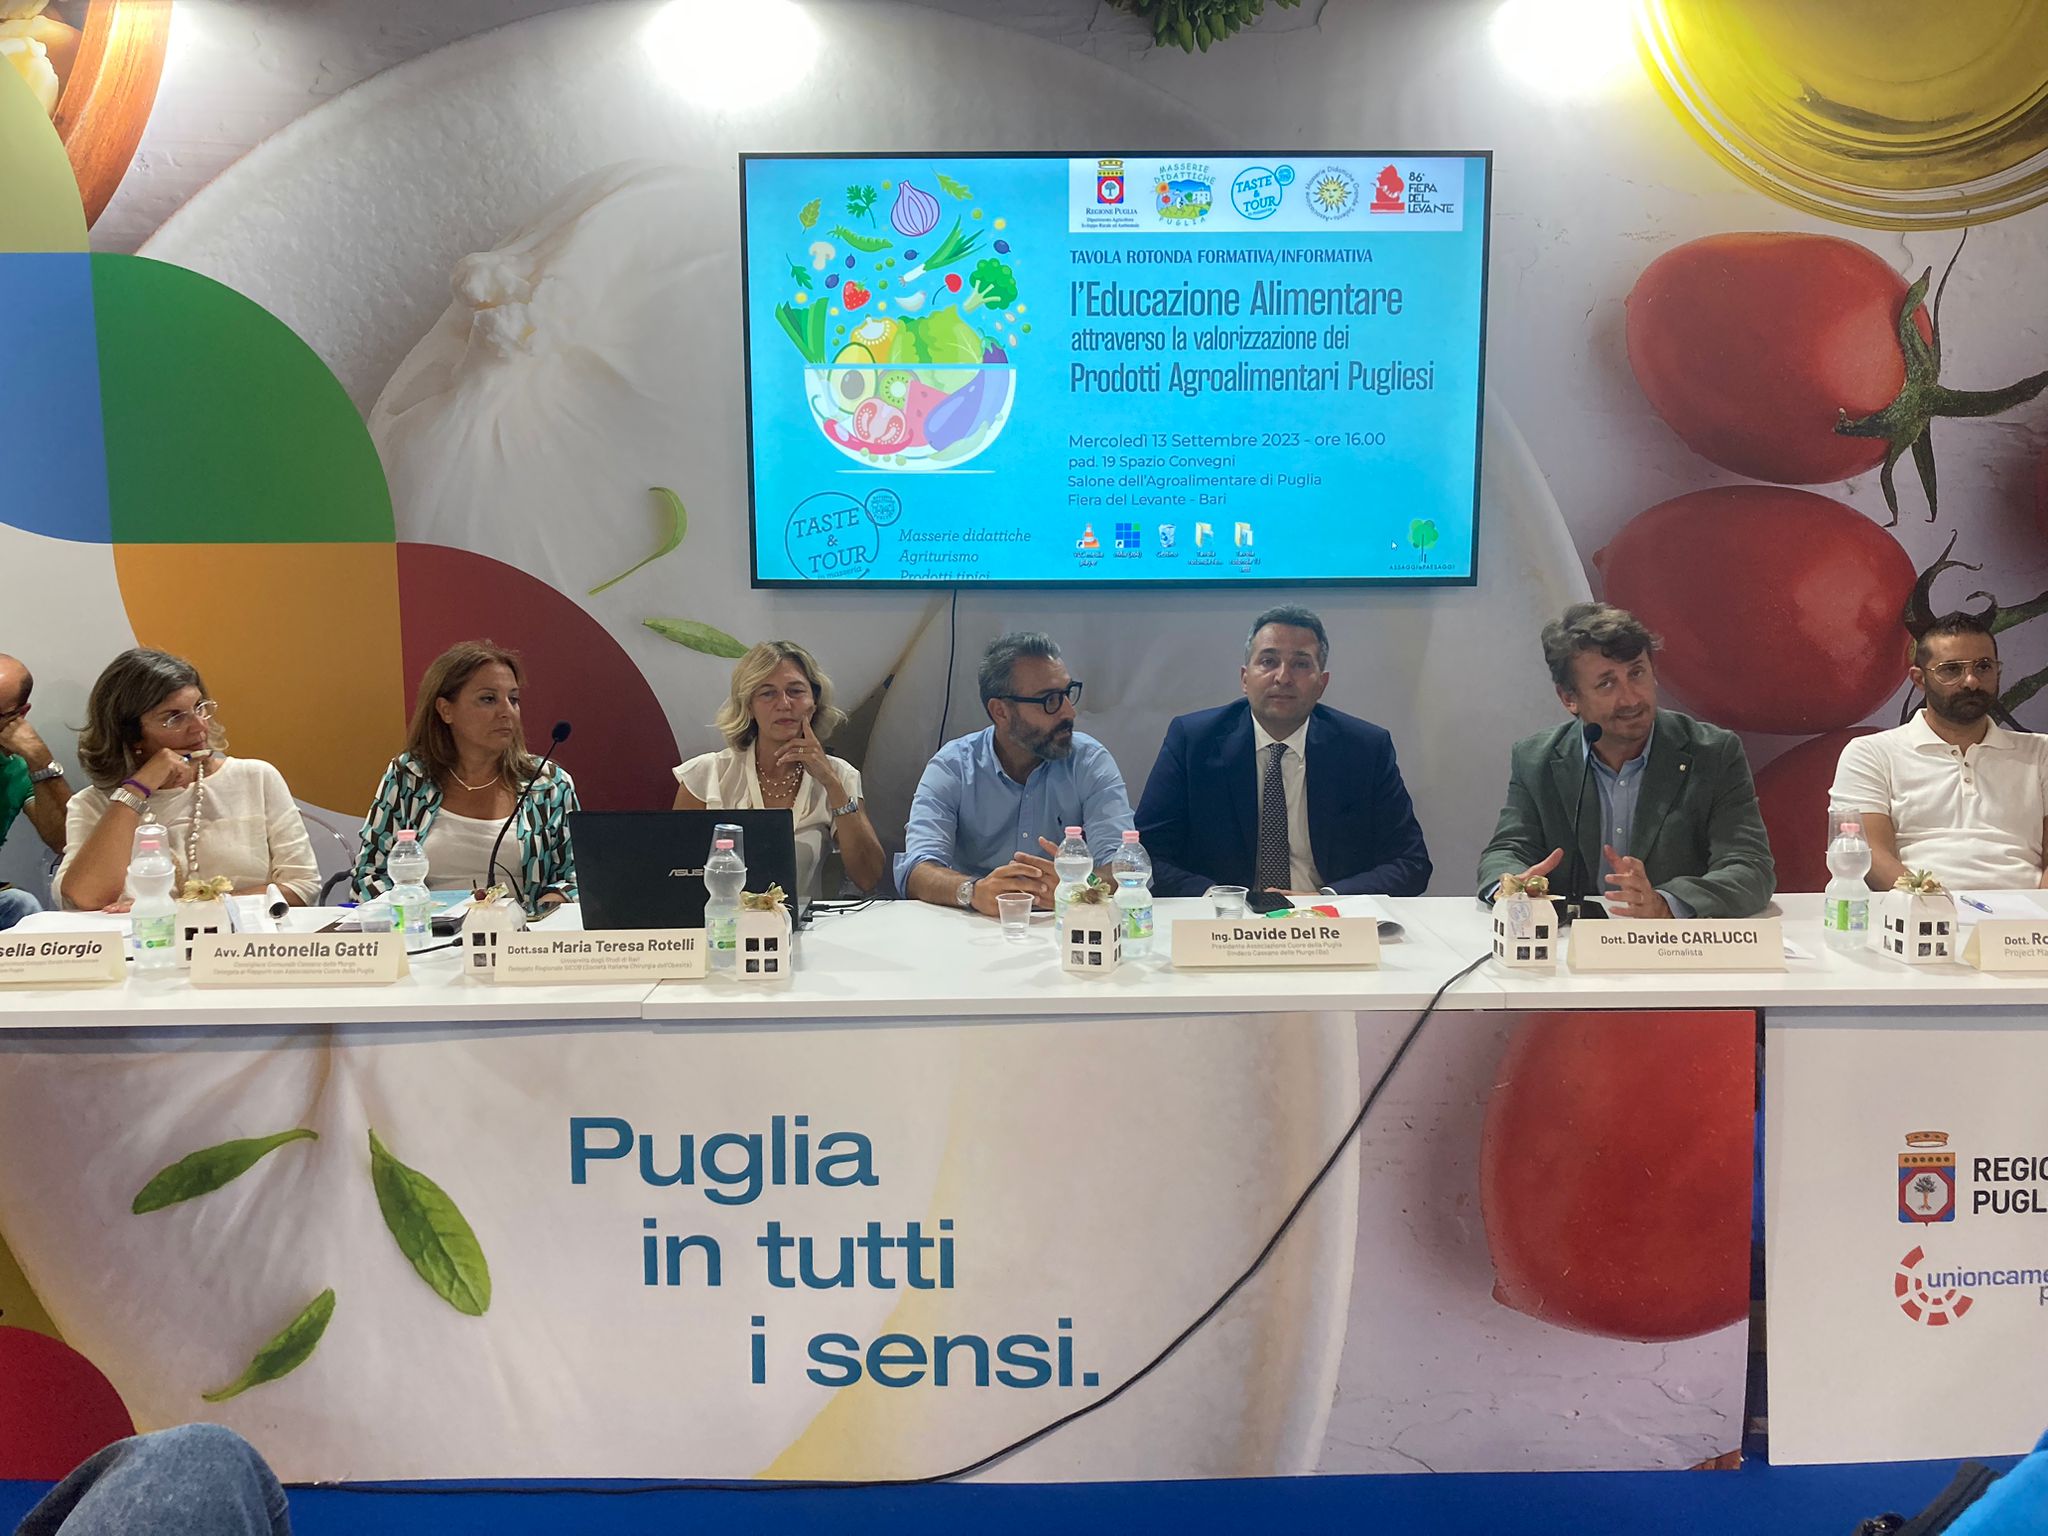 Galleria FdL 2023. Cibo, salute e innovazione: la Puglia investe nell'educazione alimentare - Diapositiva 6 di 6